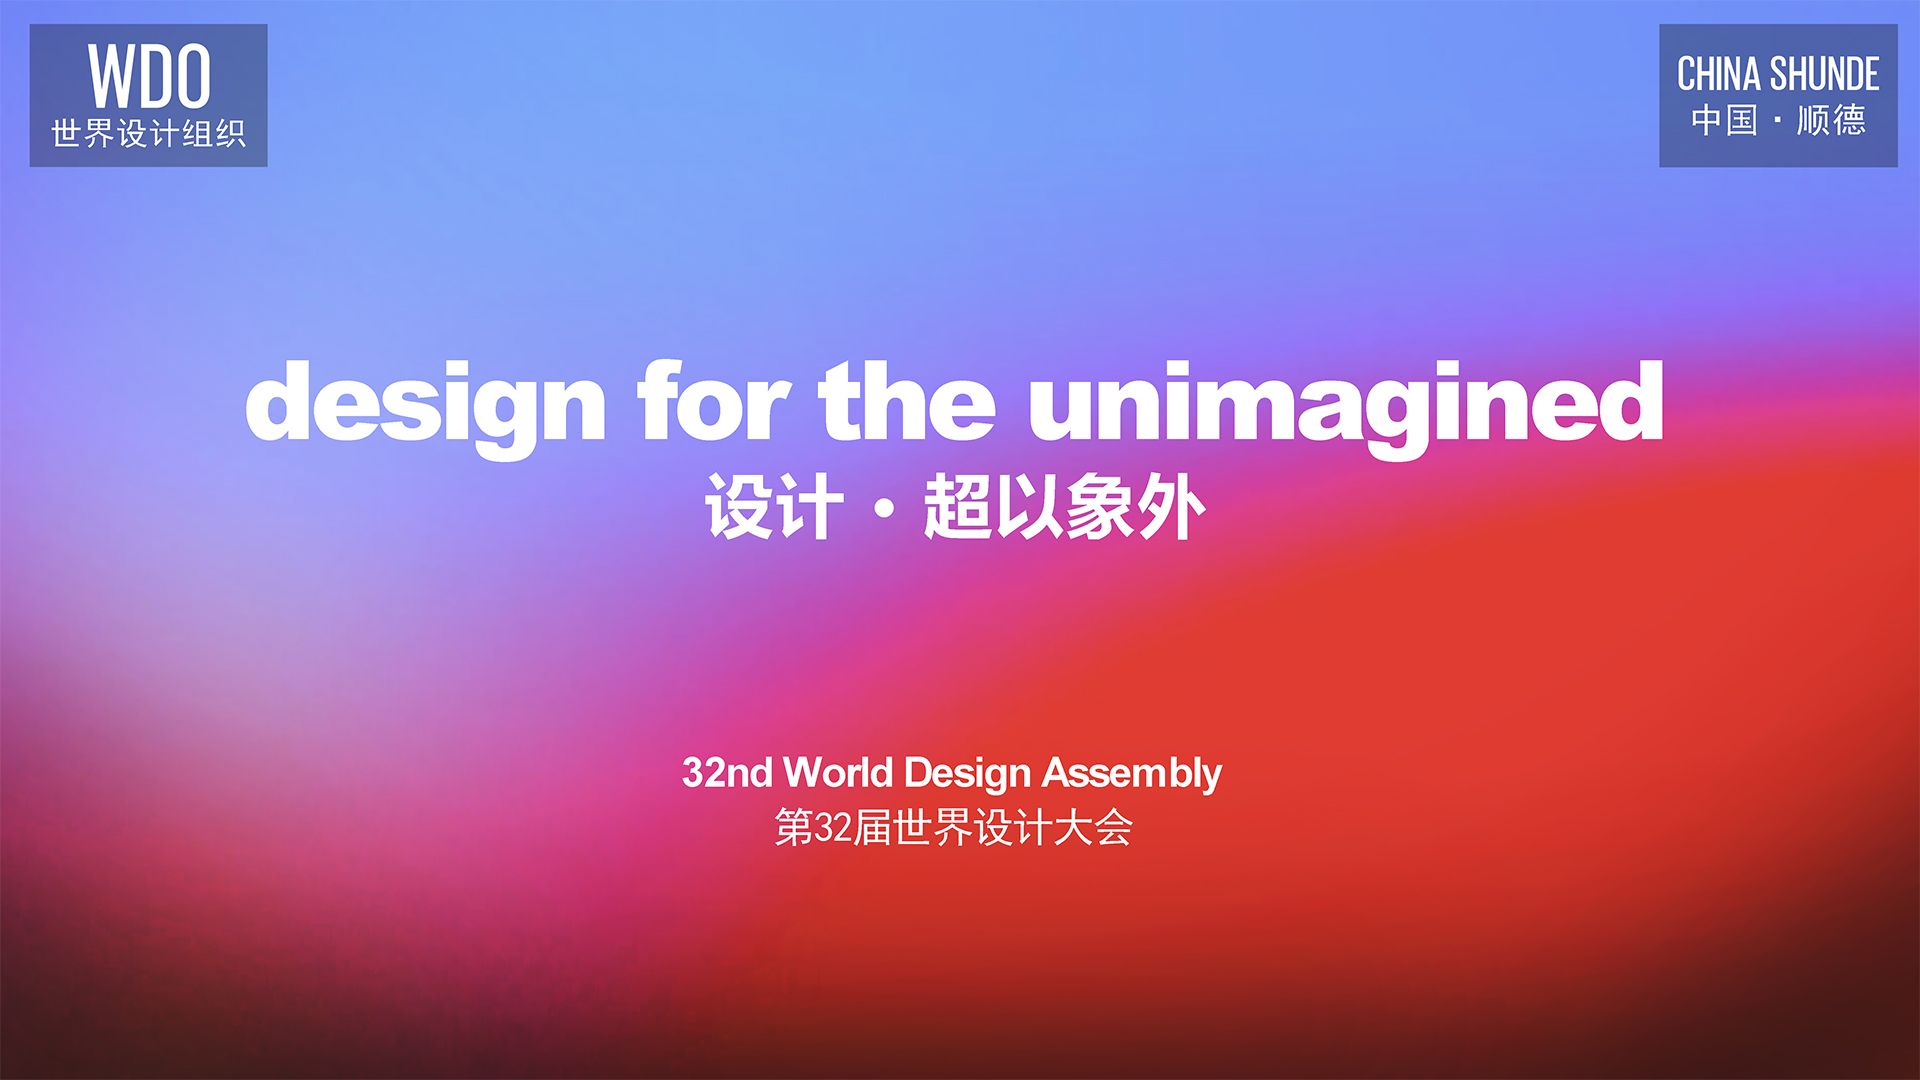 第32届世界设计大会 design for the unimagined